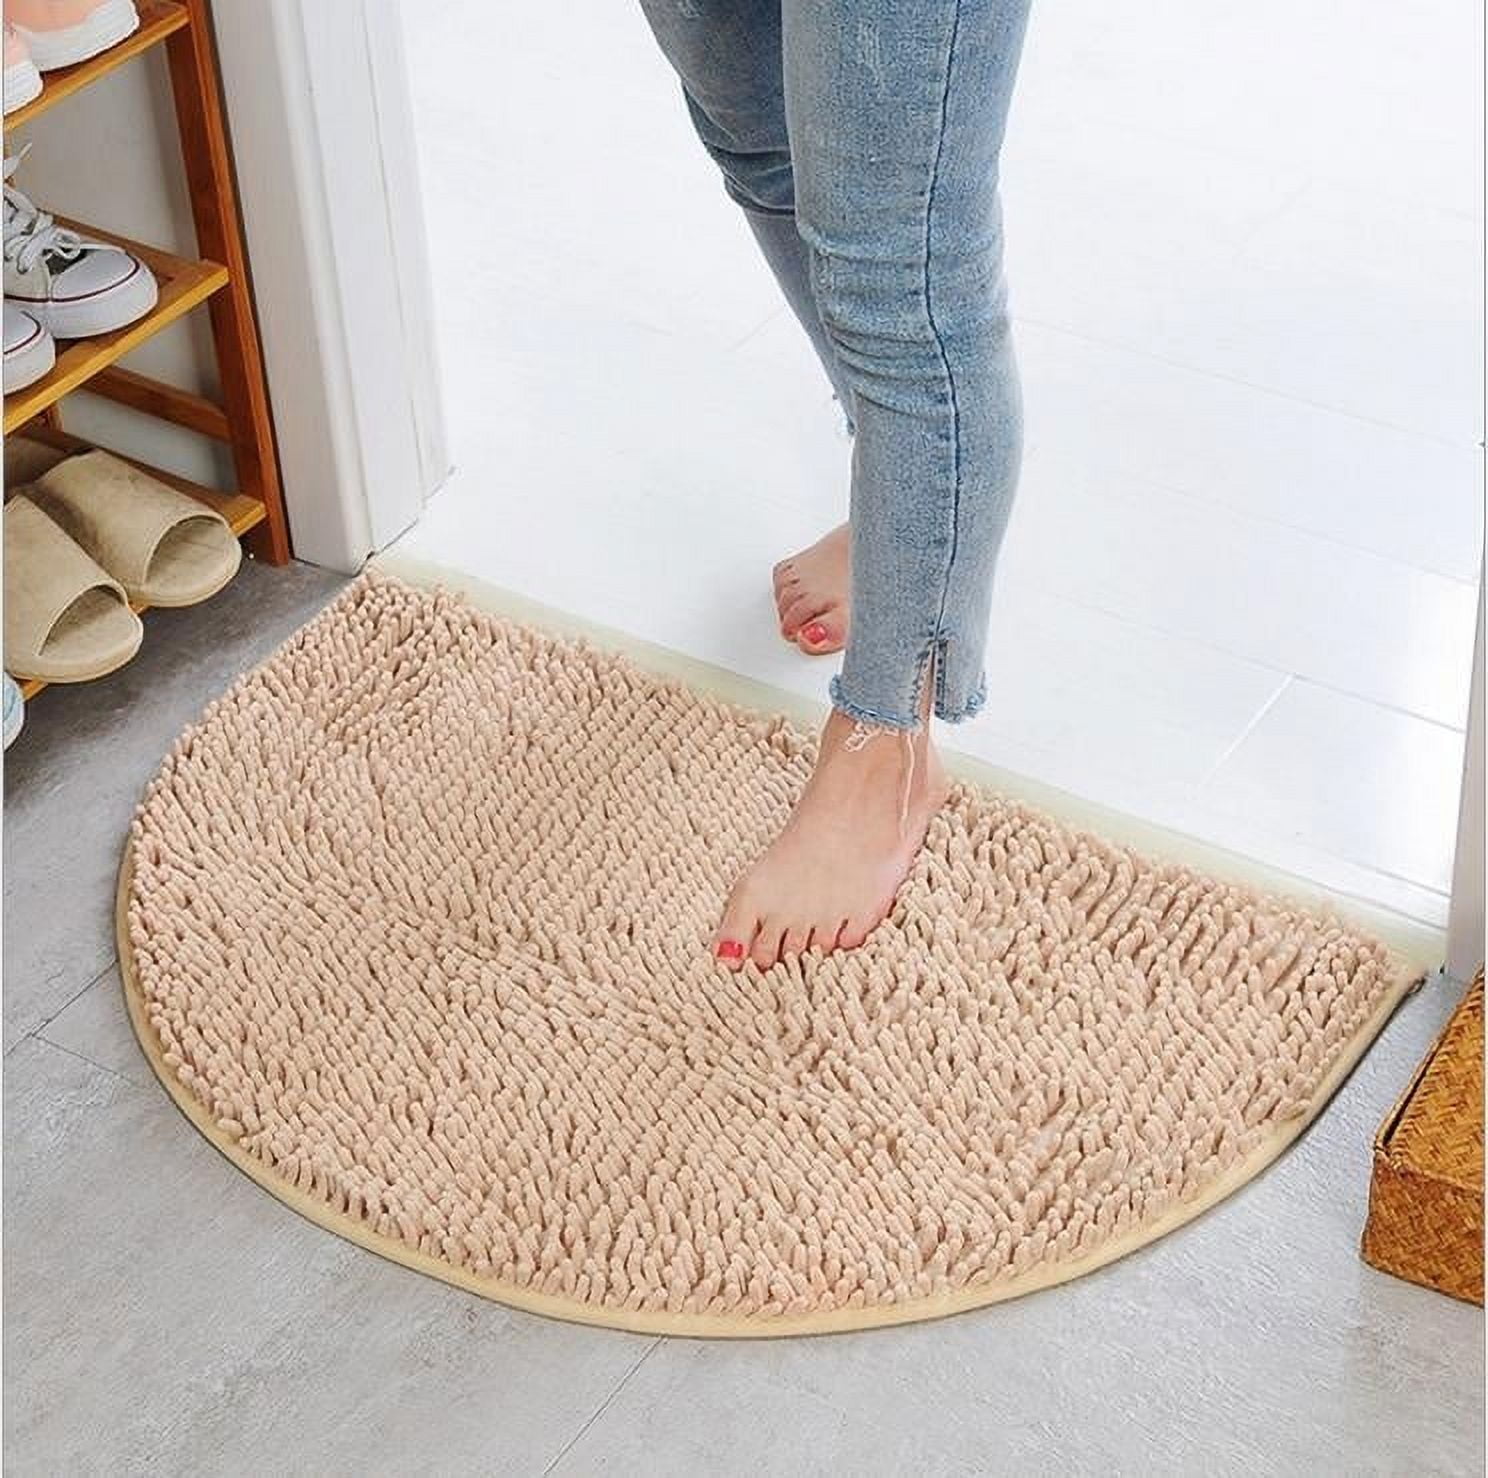 Abstract Half Moon Doormat Indoor & Outdoor Doormat Long Lasting Welcome Mat  Easy to Clean Non-slip Dirt Trap Front Door Mat 60x40cm 